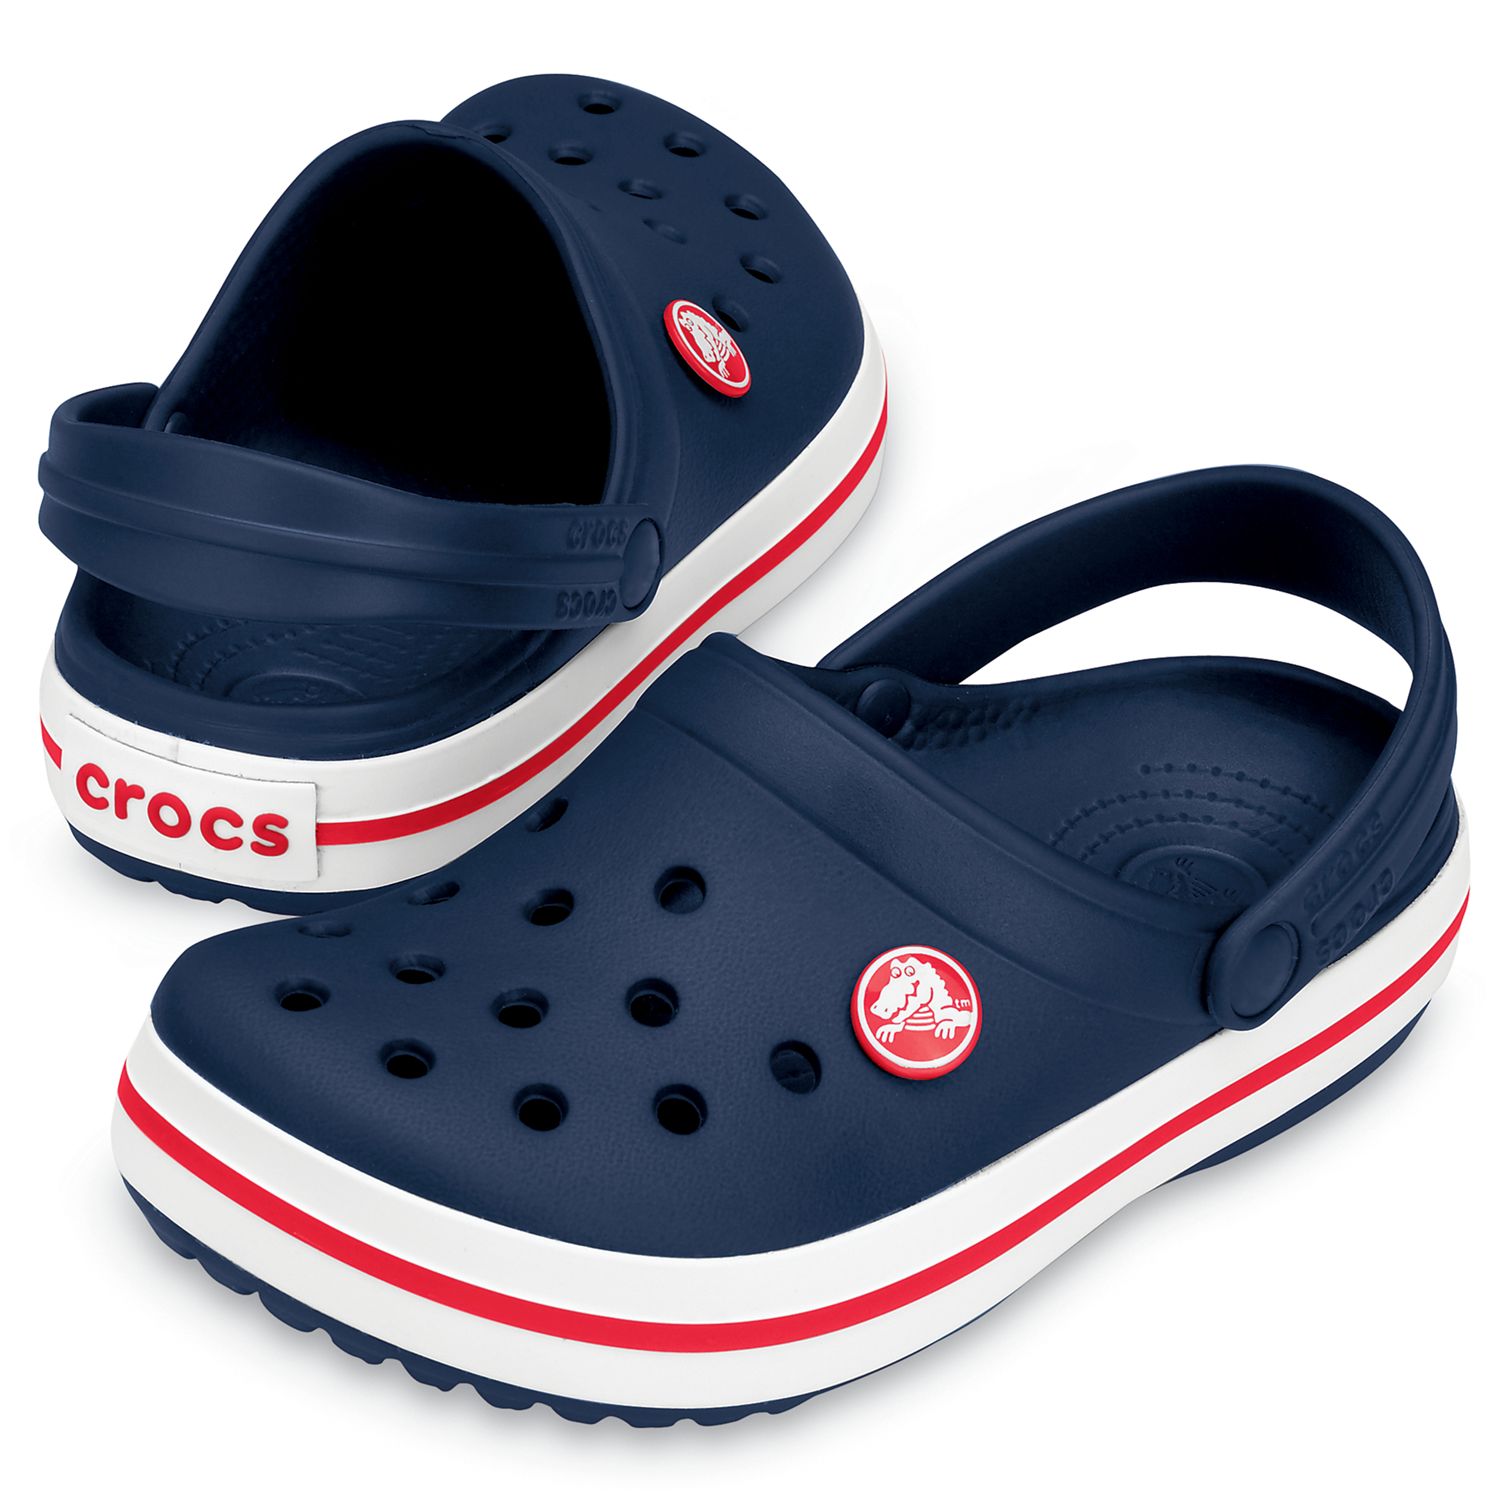 Buy Crocs Kids' Crocband Clogs Online at johnlewis.com